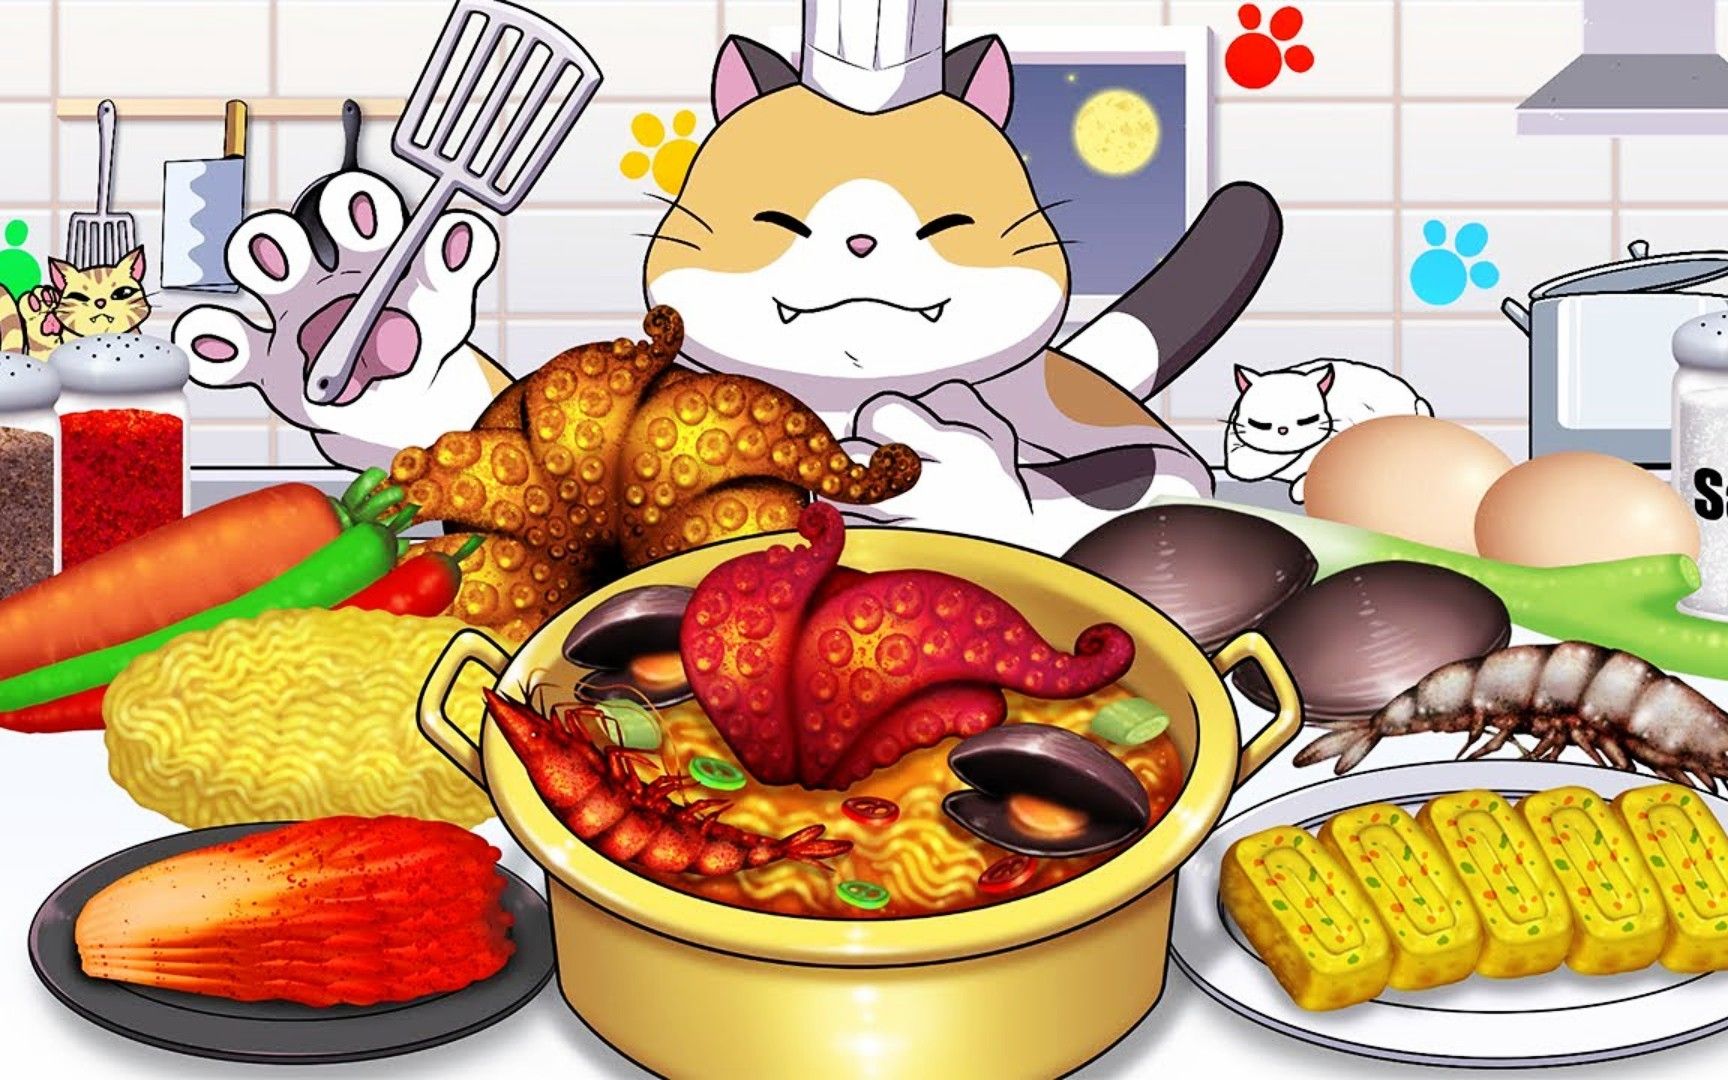 美食动画:料理猫王挑战制作超级海鲜面,满满的一大碗,好满足!